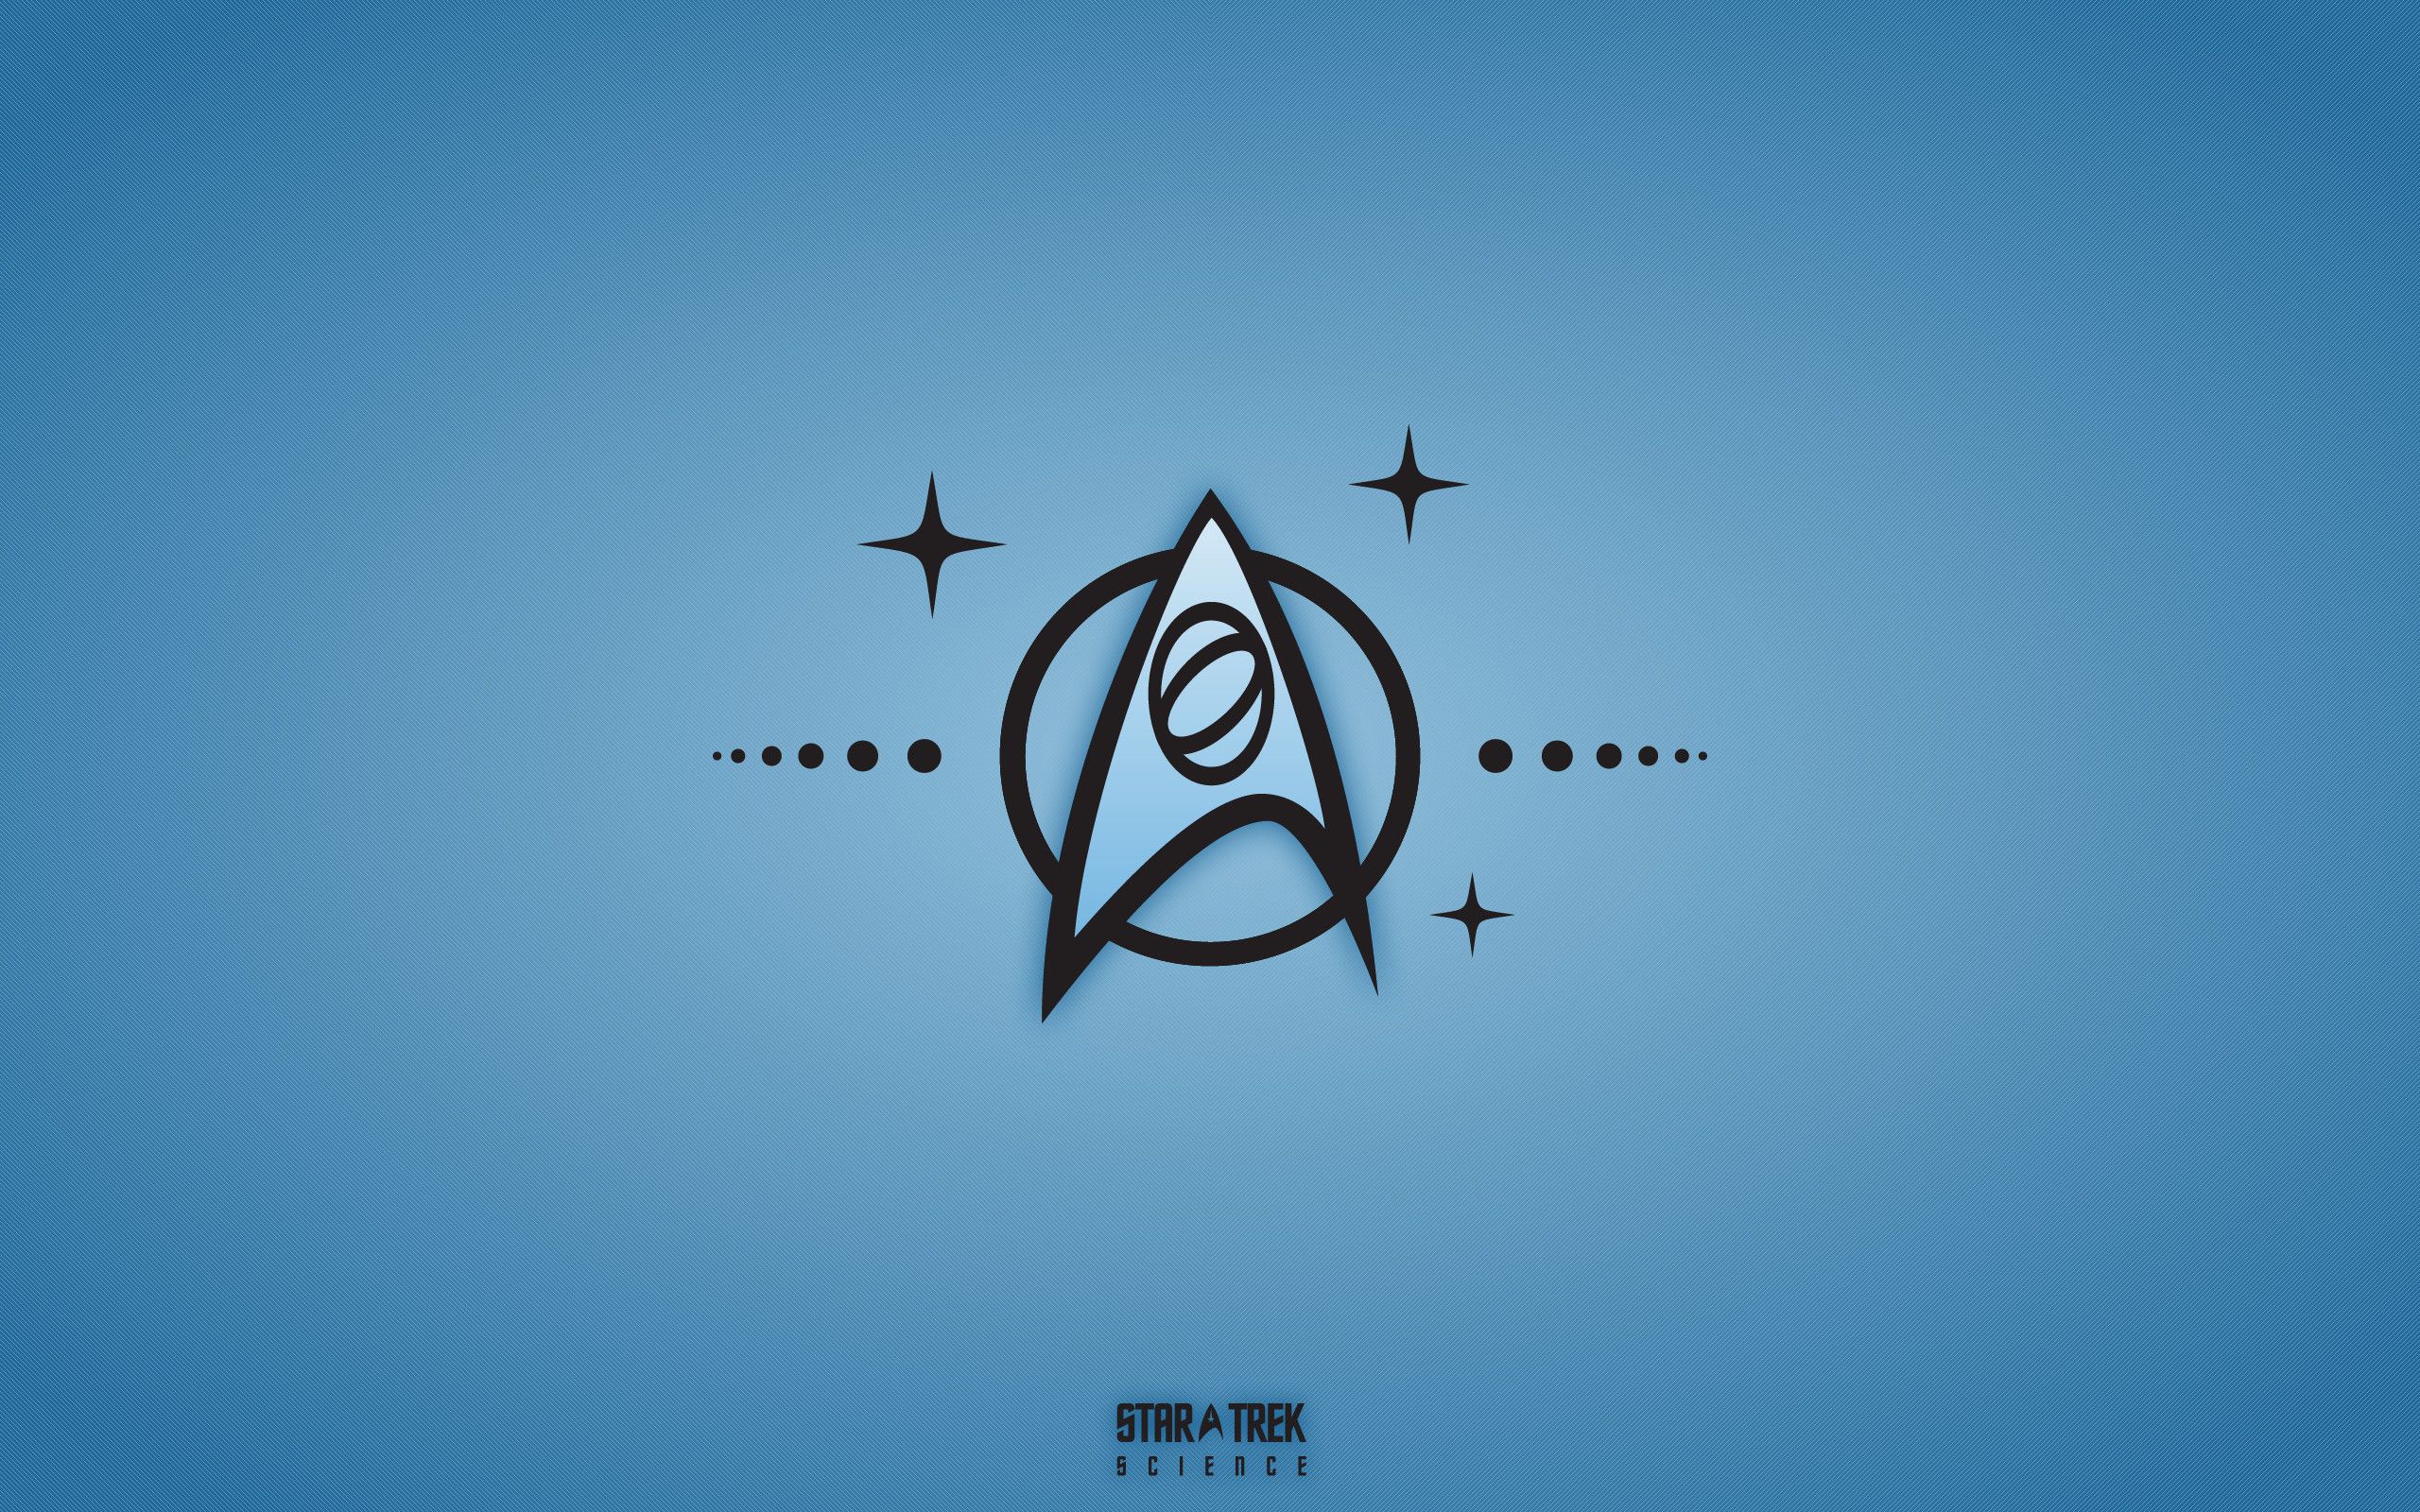 Starfleet Logo Wallpaper